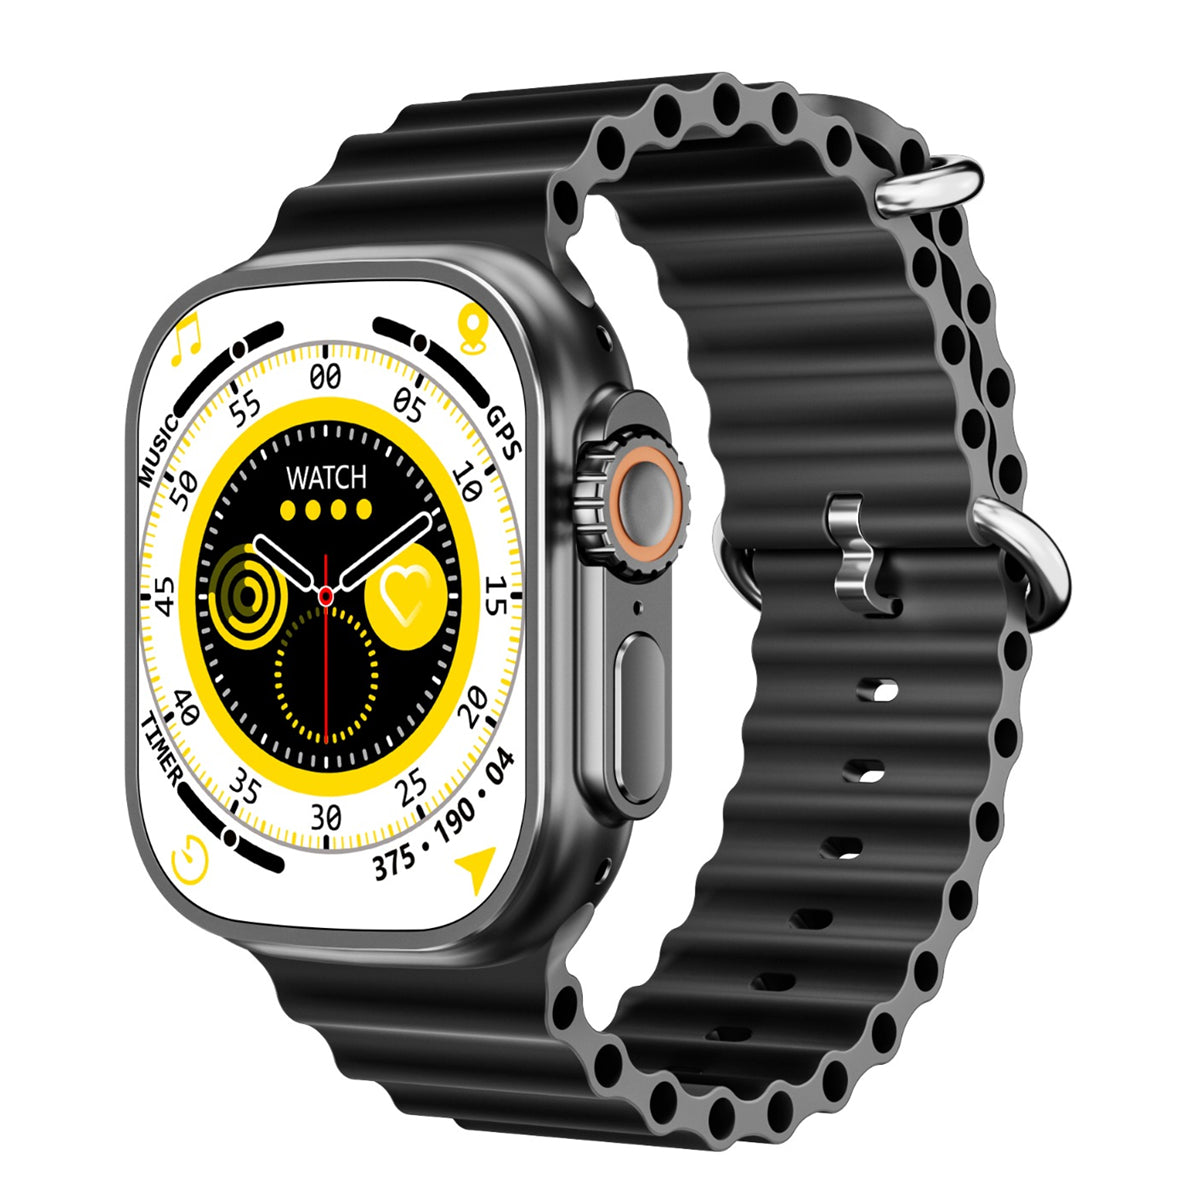 Reloj Smart Watch Ws9 Ultra Fralugio Ecg Hr Bp Spo2 Llamadas